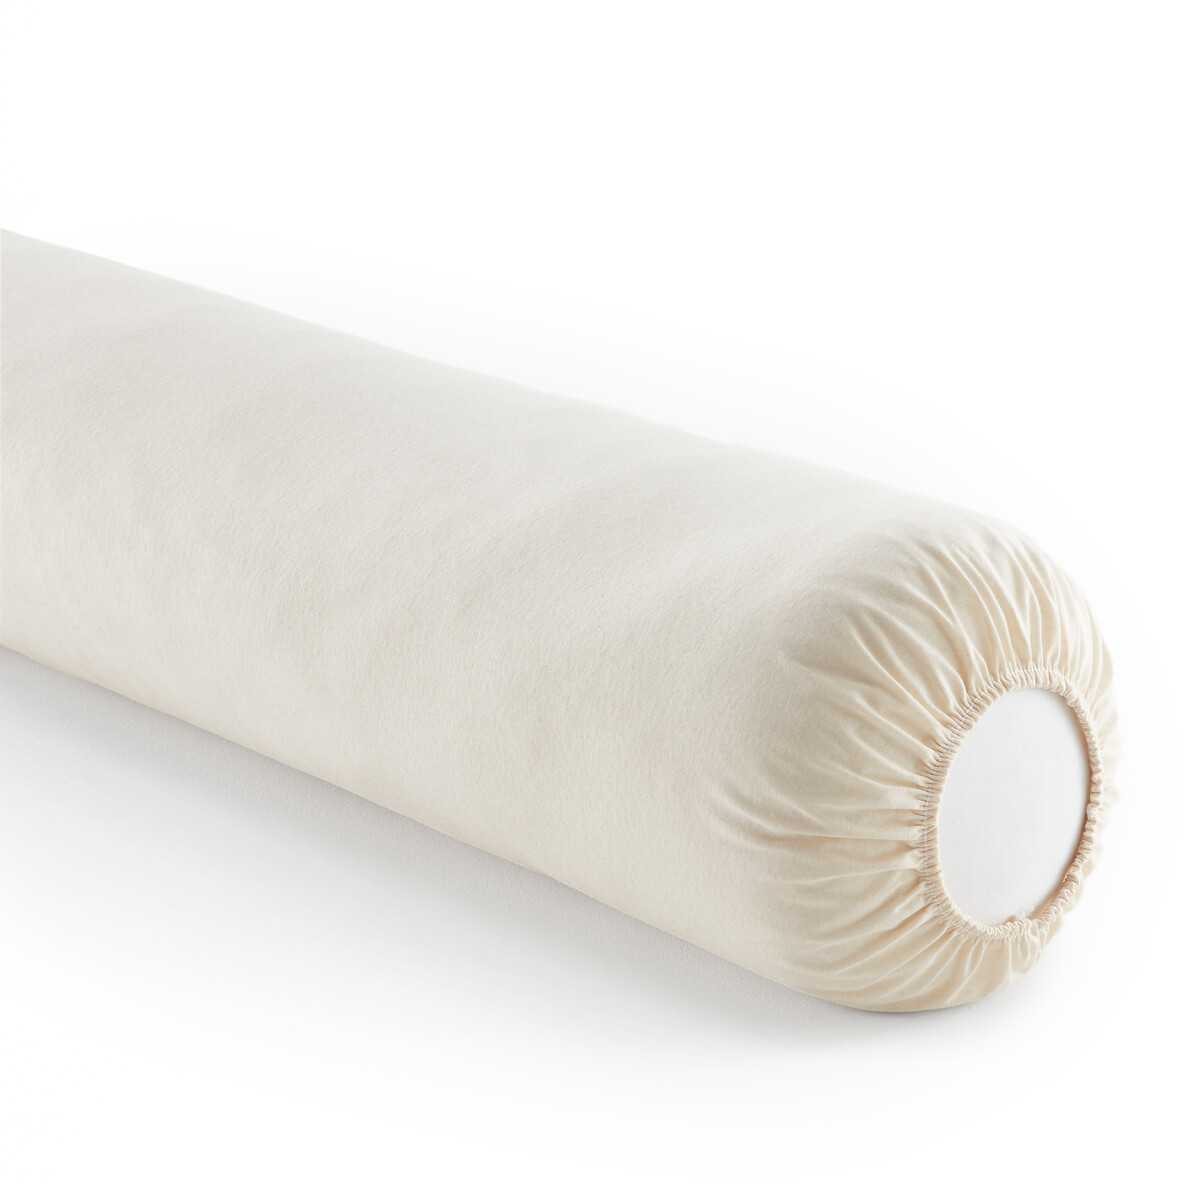 Защитный Чехол на подушку-валик из биохлопка непромокаемый длина: 140 см бежевый